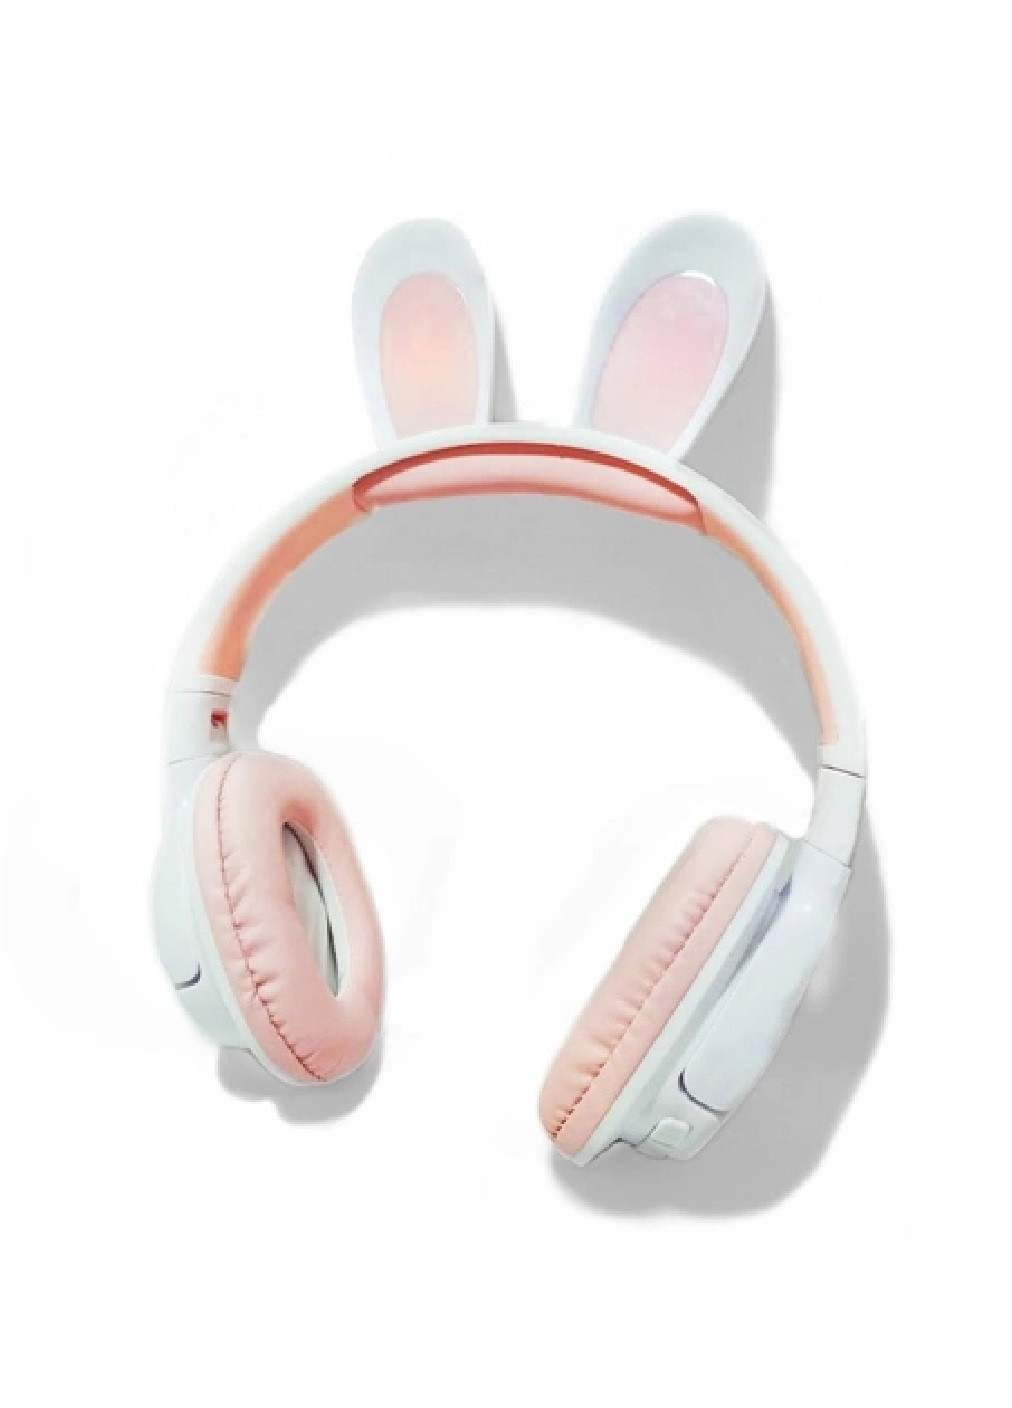 Детские беспроводные блютуз наушники с микрофоном LED подсветкой ушками кролика 300 mAh (475689-Prob) Белые с розовым Unbranded (269993125)